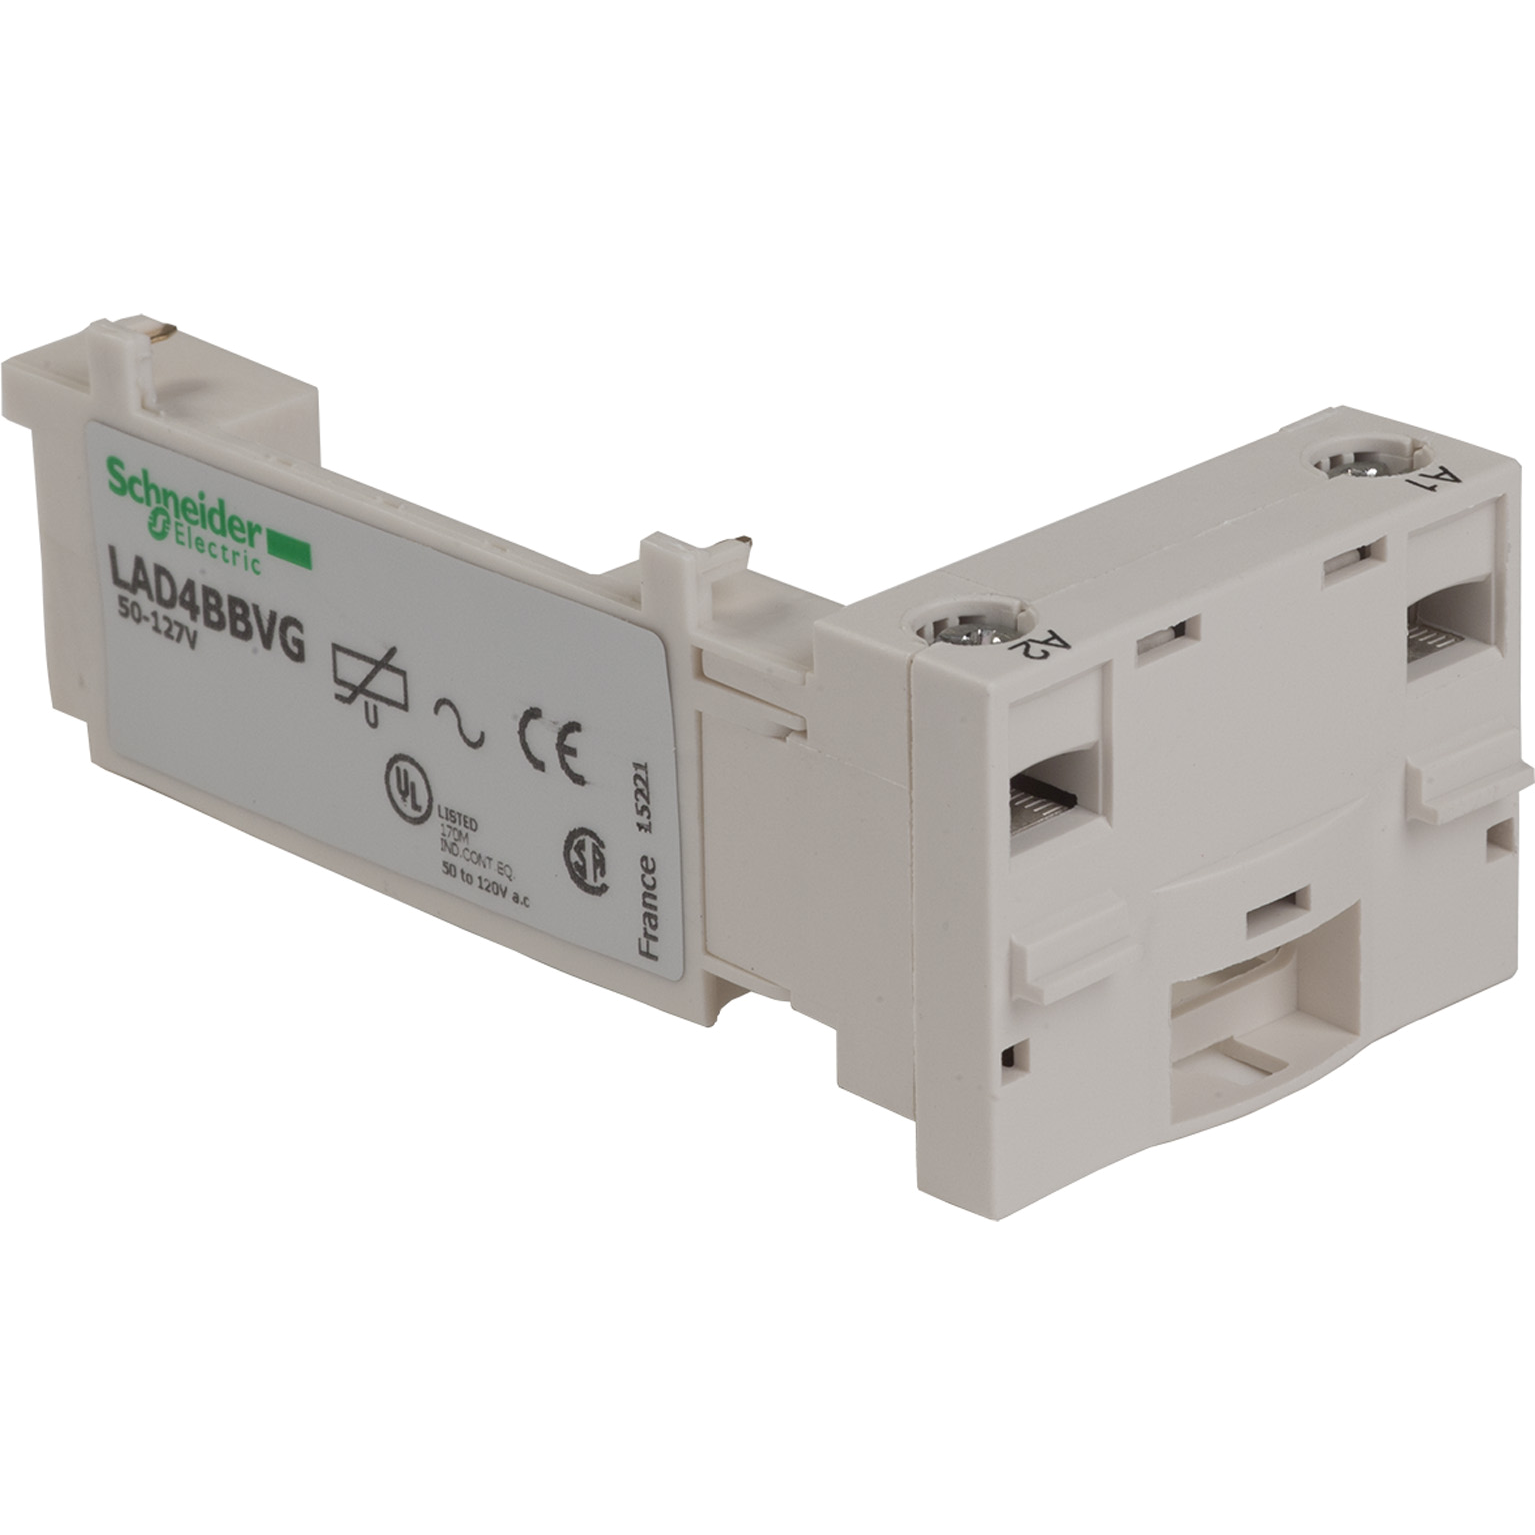 Contactor cabling accessory IEC